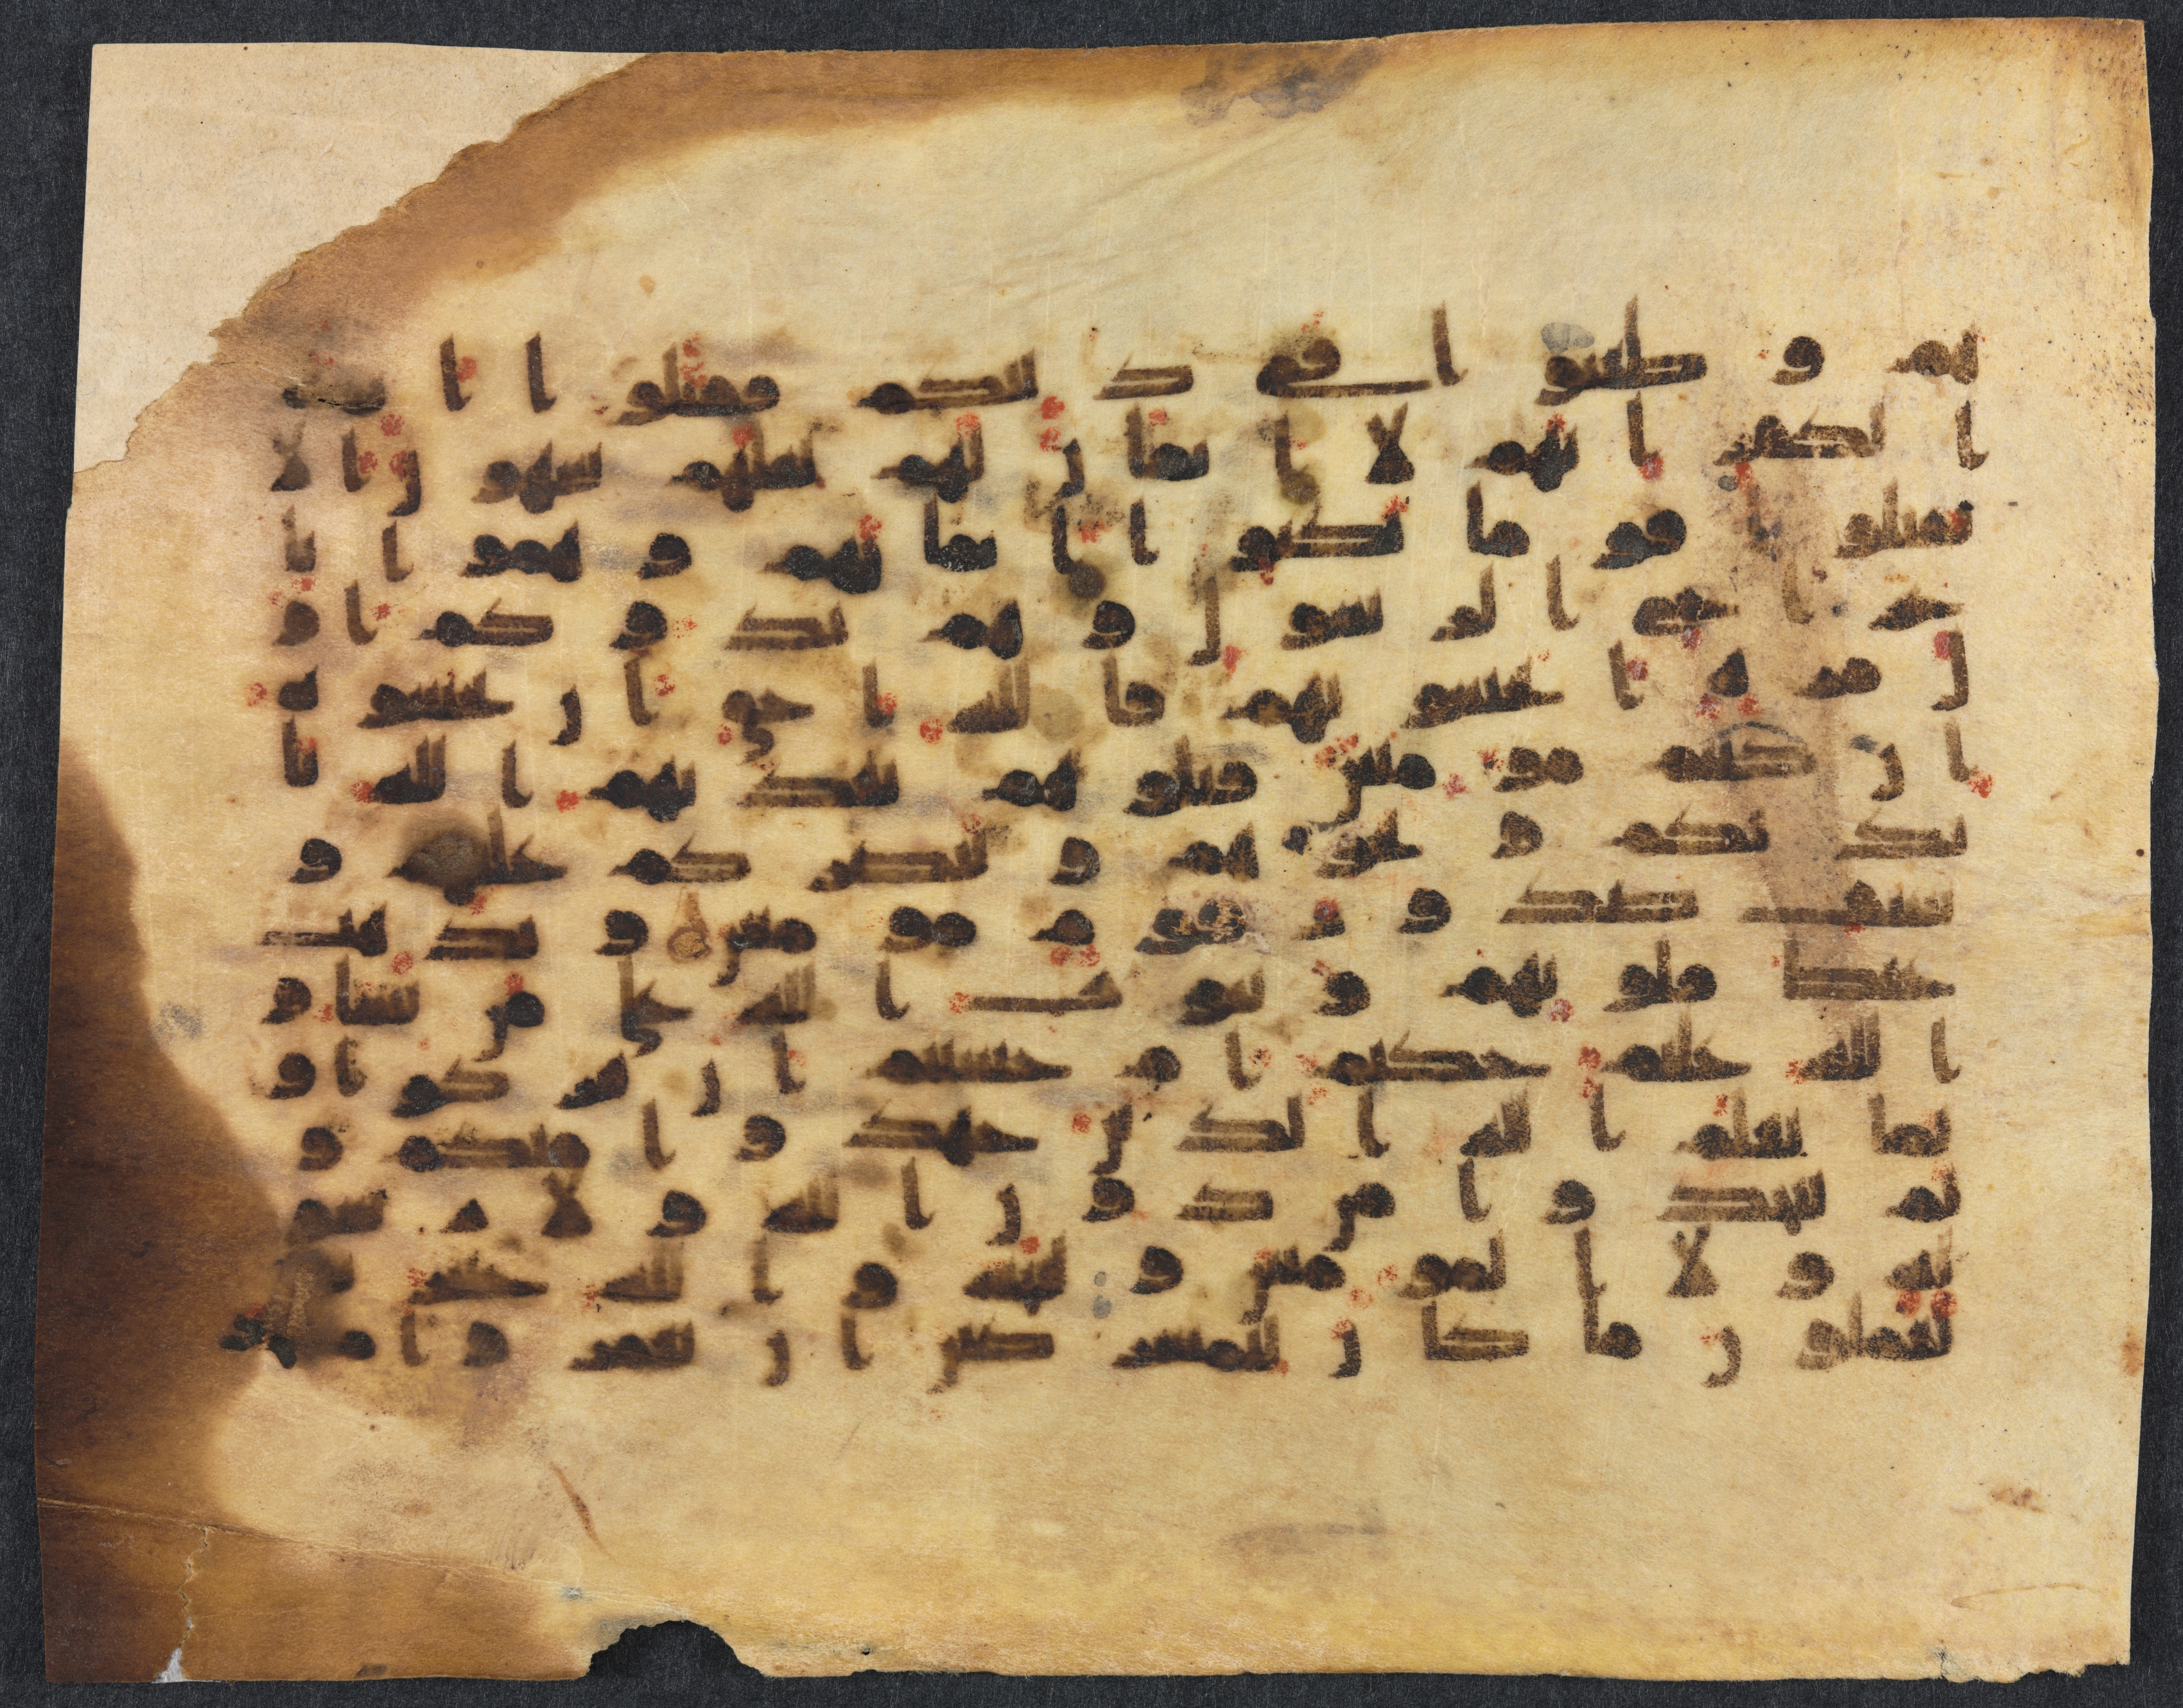 Qur'an Manuscript Folio (recto)